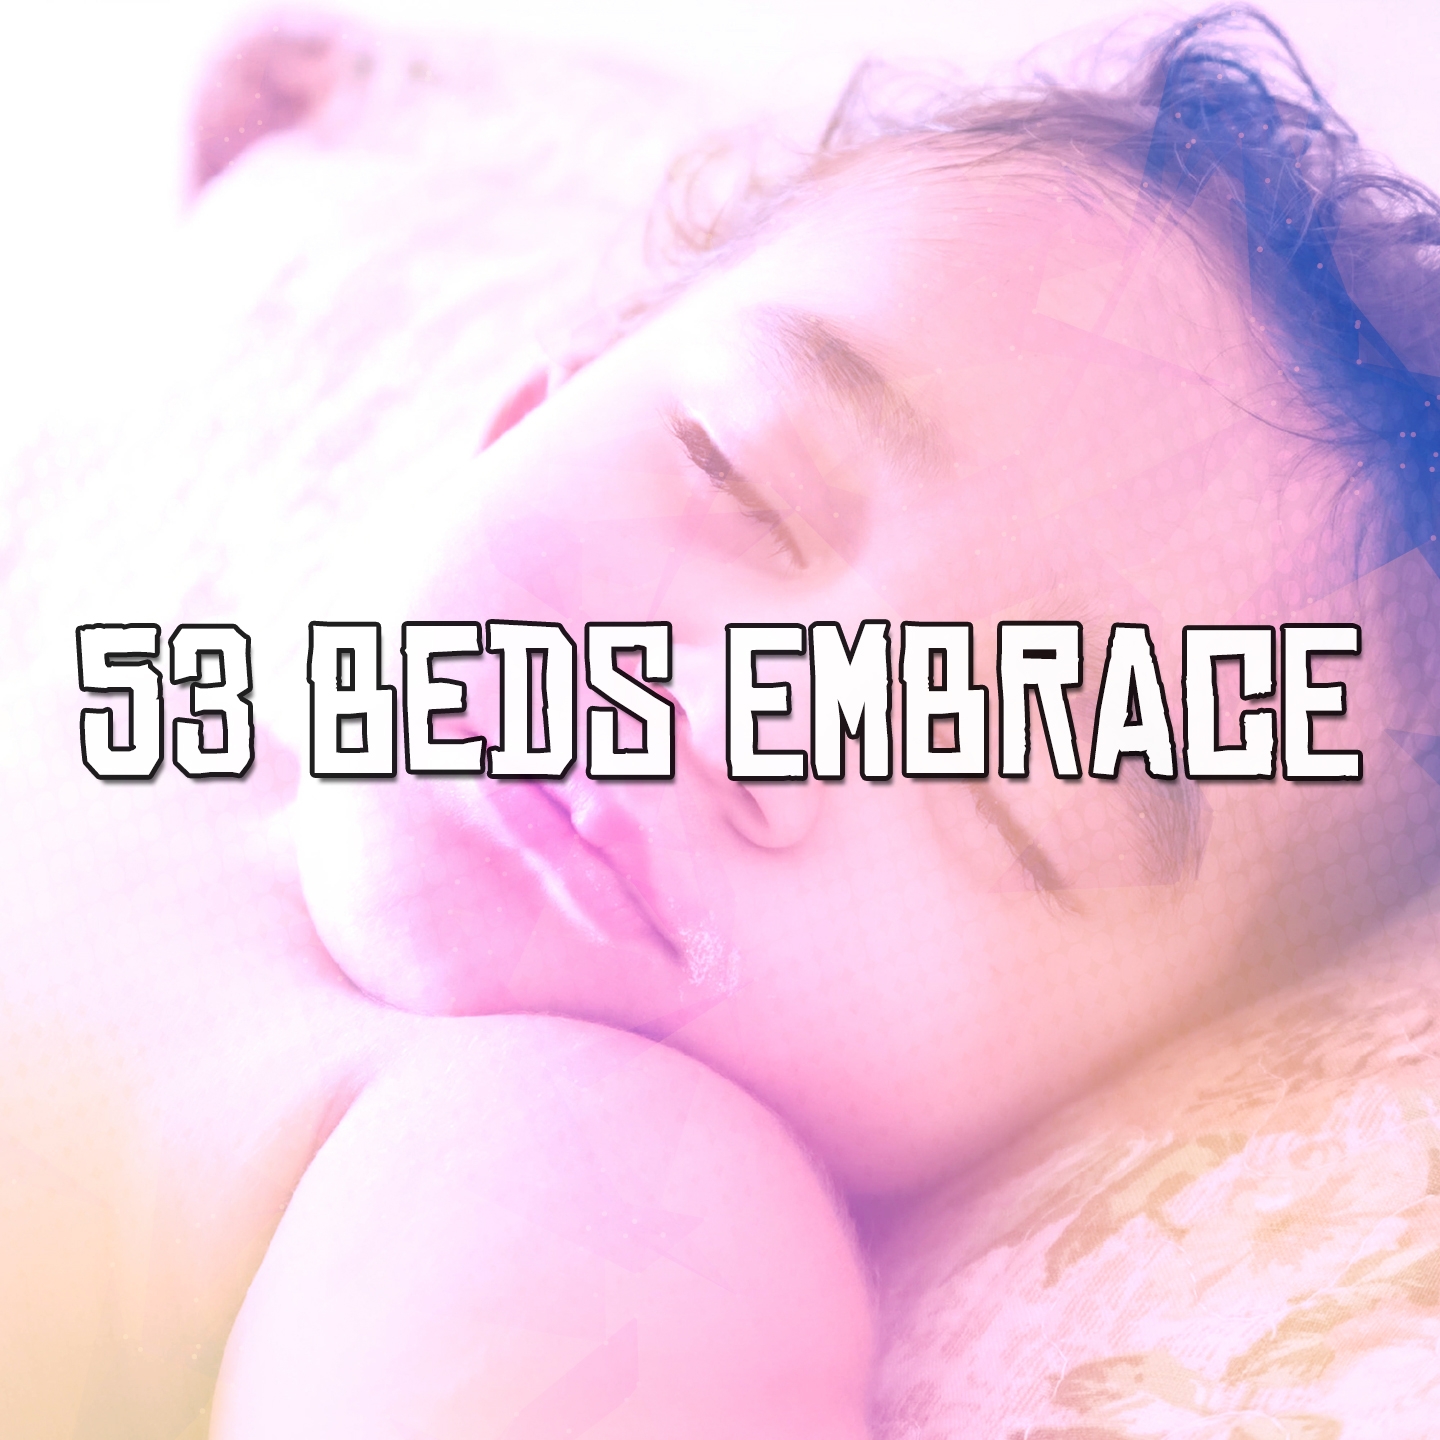 53 Beds Embrace